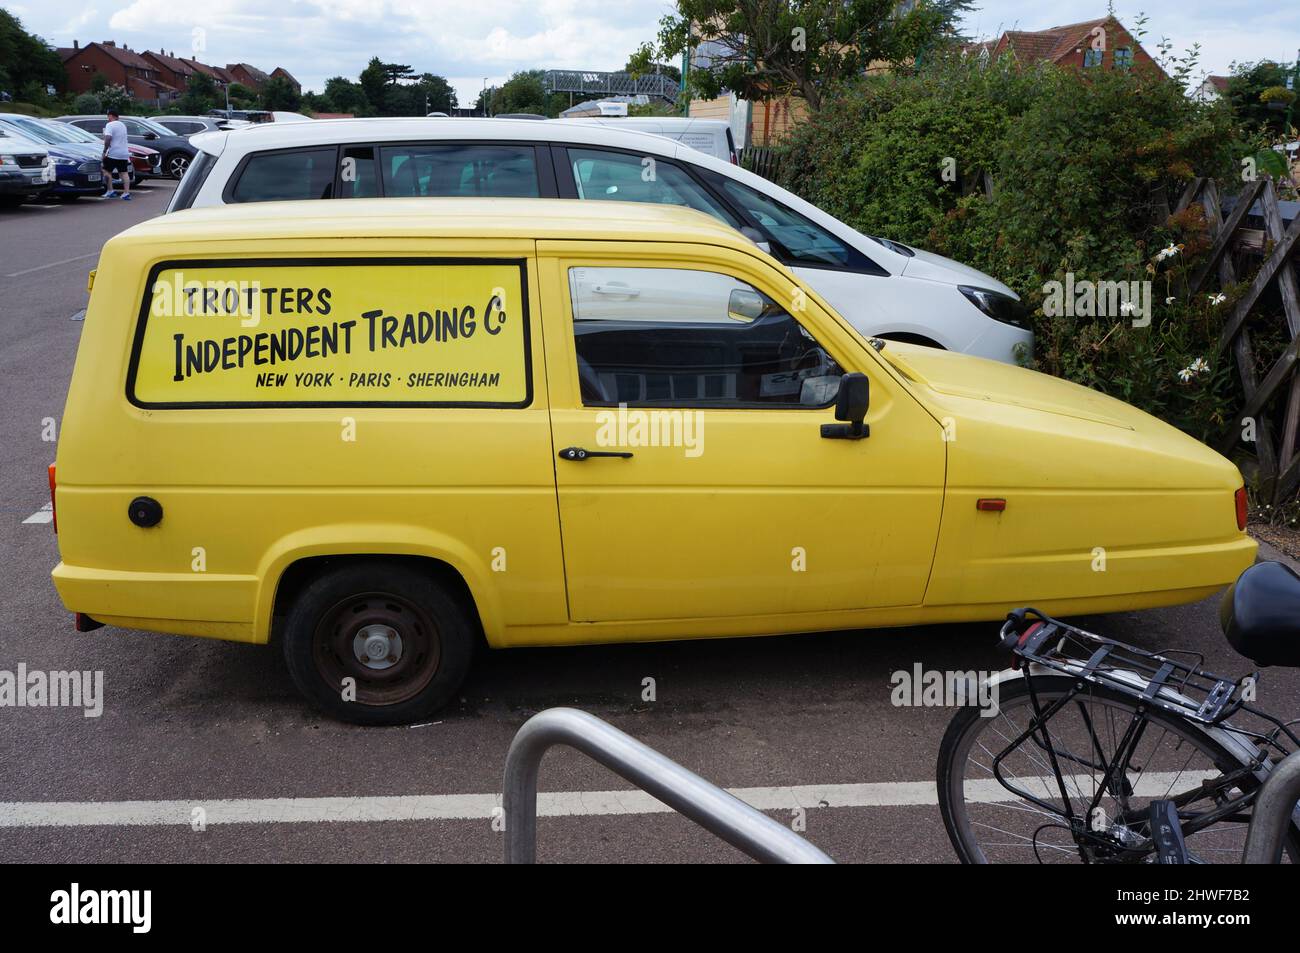 Seitenansicht des Yellow Reliant Robin 3 Wheeler Van auf einem Parkplatz  mit Trotter`s Independent Trading auf der Seite Stockfotografie - Alamy